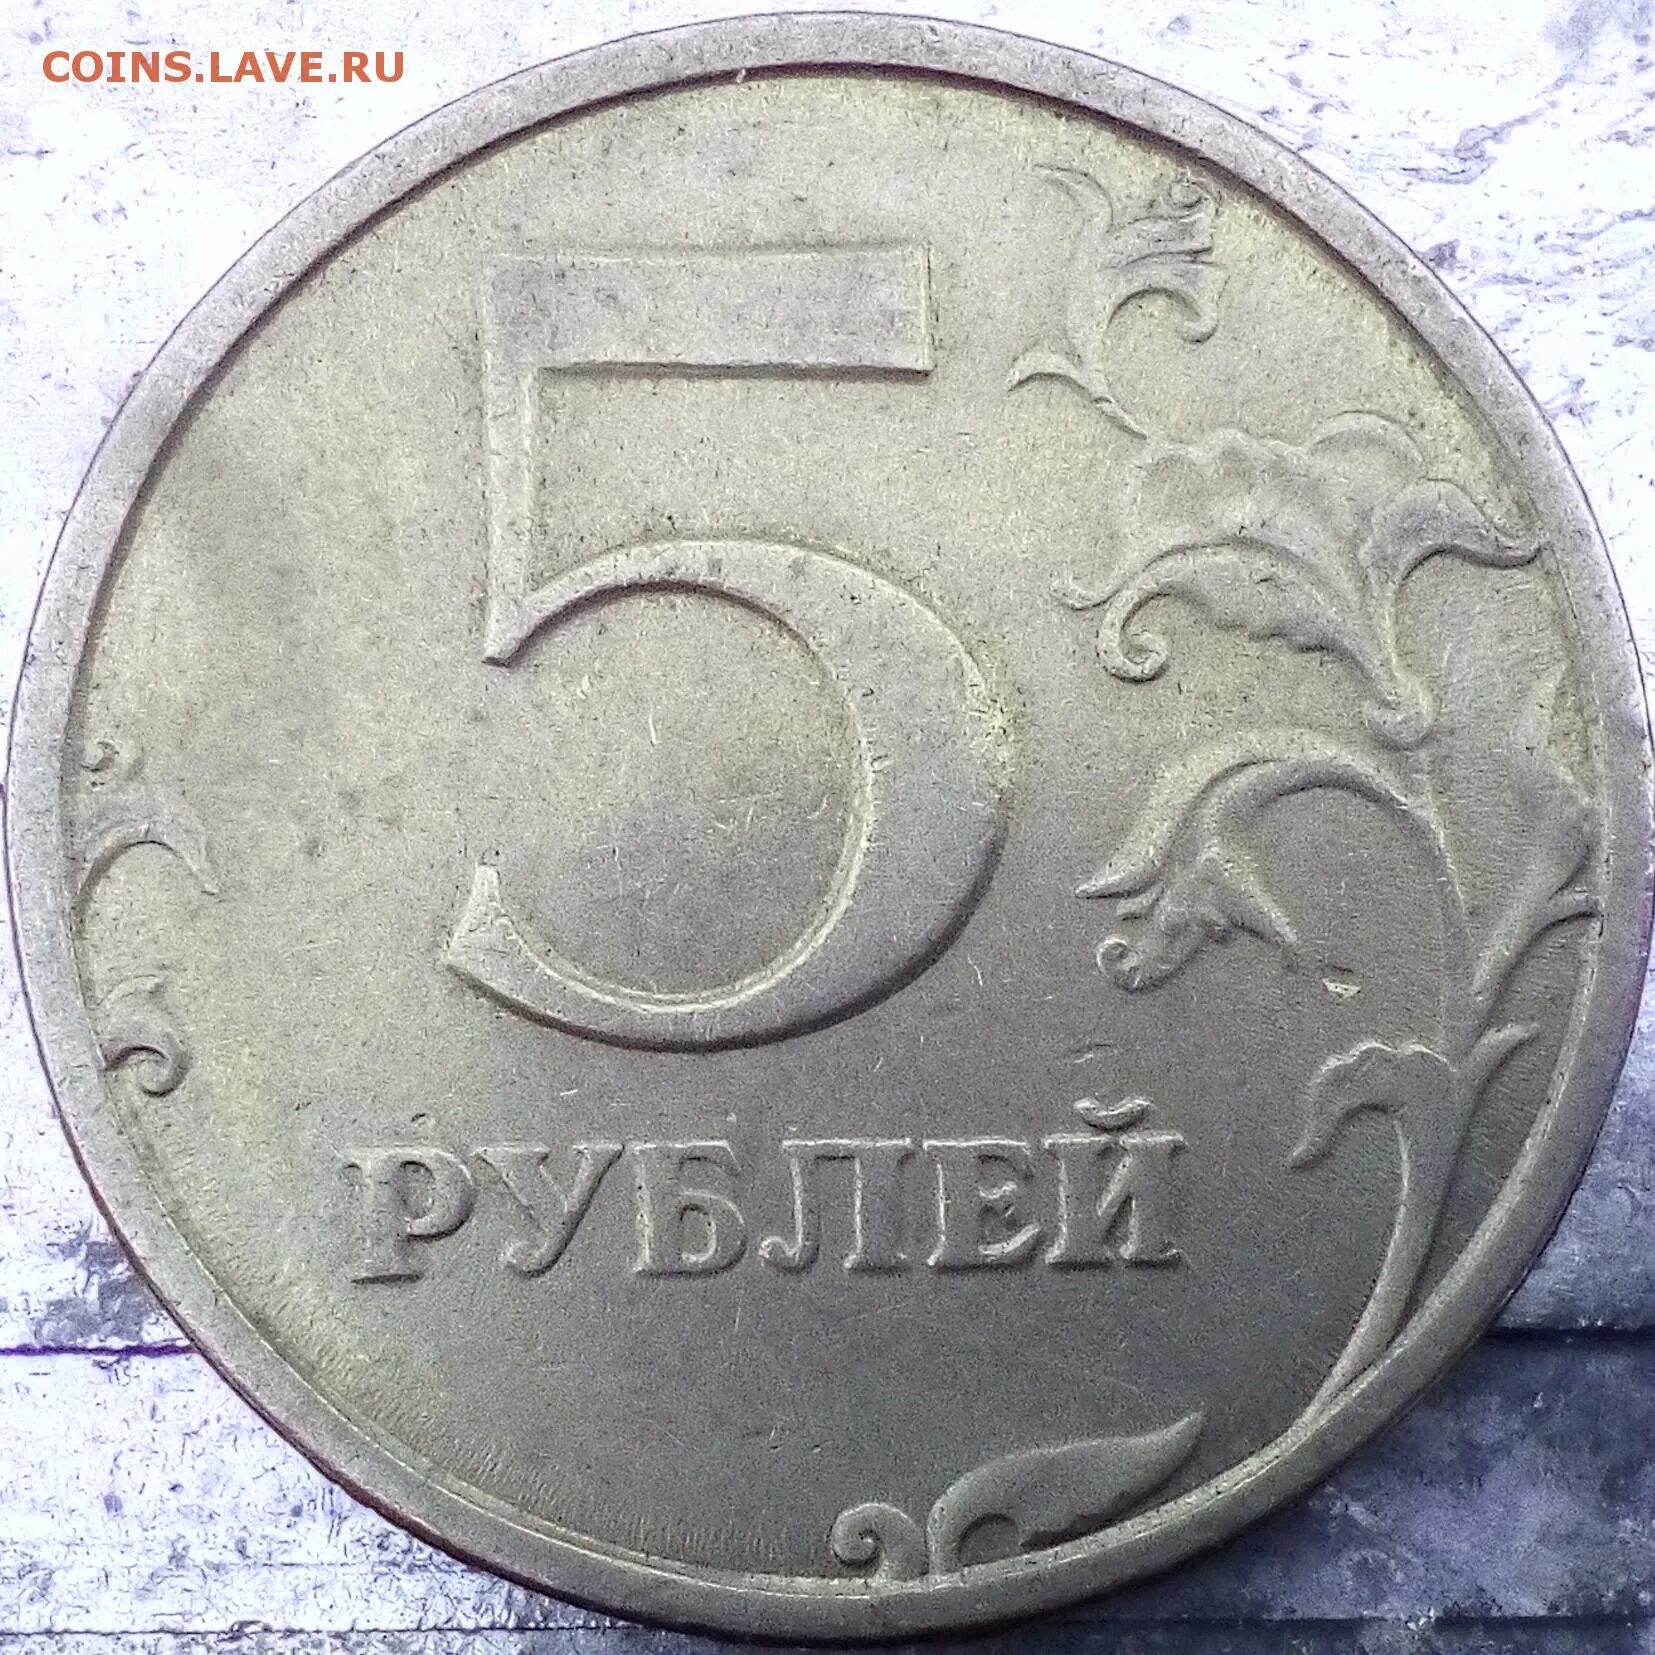 5 рублей 17 года цена. 100 Рублей 1998. 5 Рублей 1998 года в черном цвете. 6000 Рублей 1998. Два рубля 1998 бумажные.